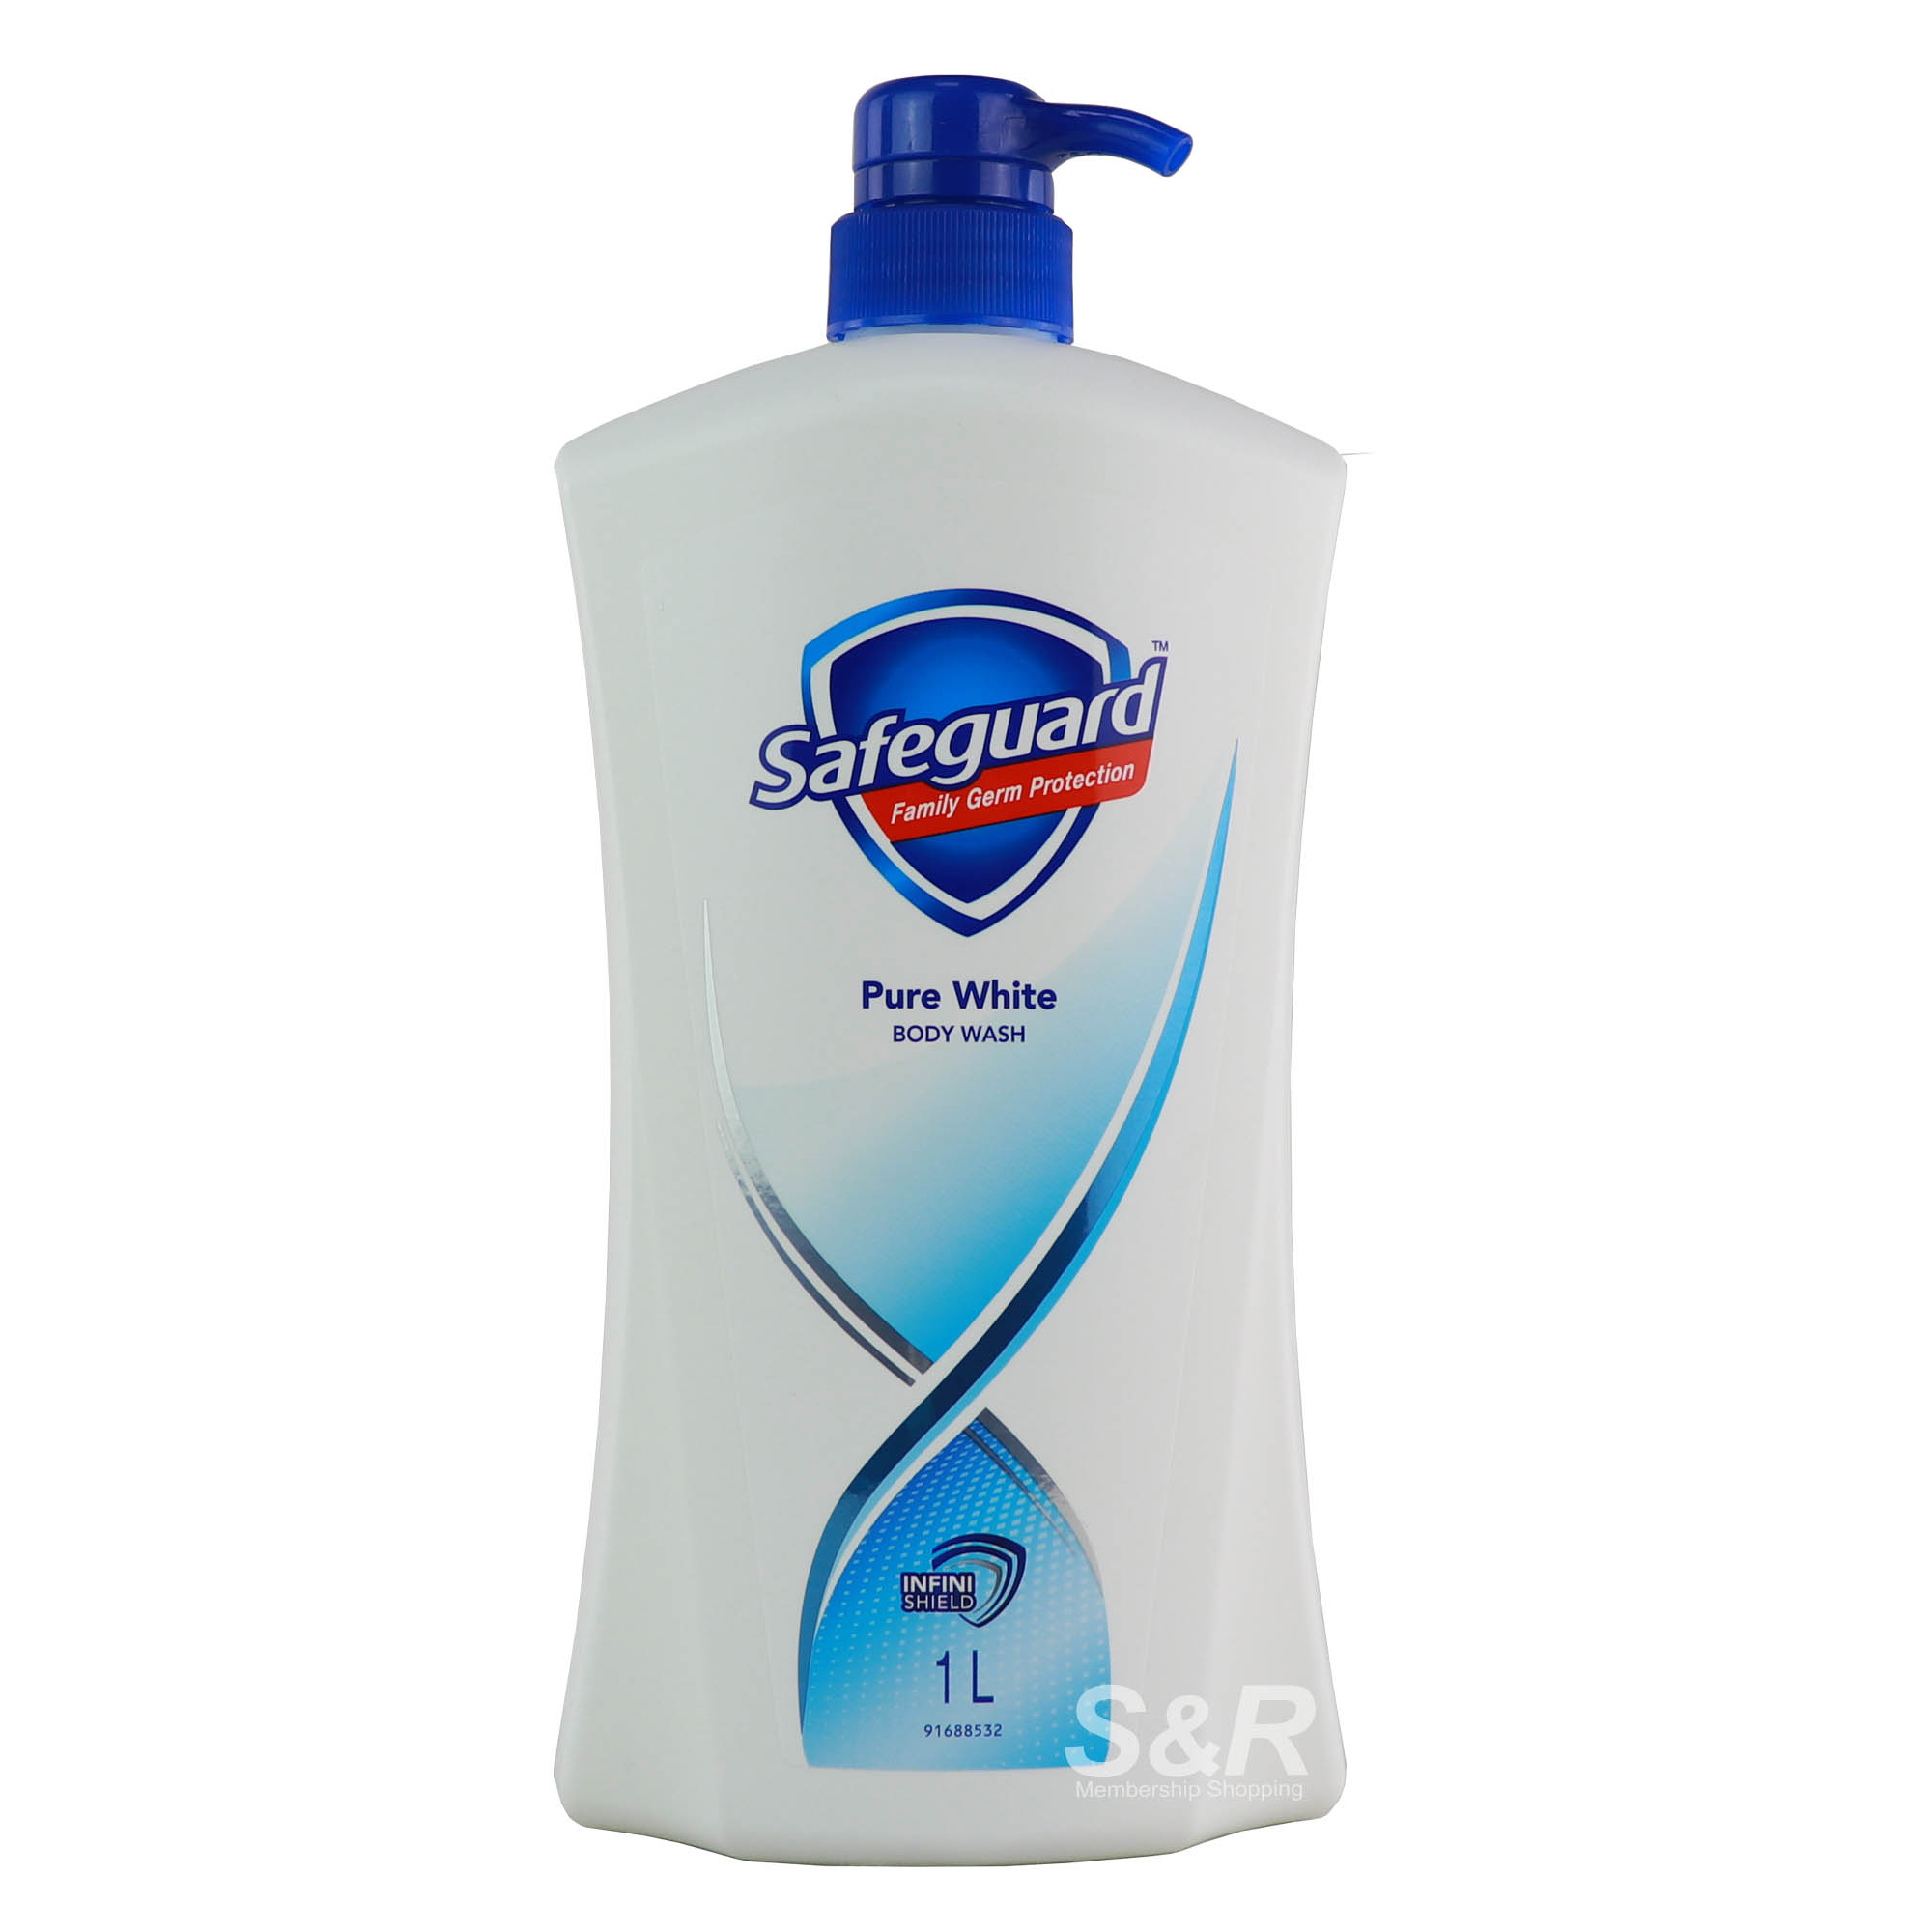 Safeguard Pure White Body Wash 1L